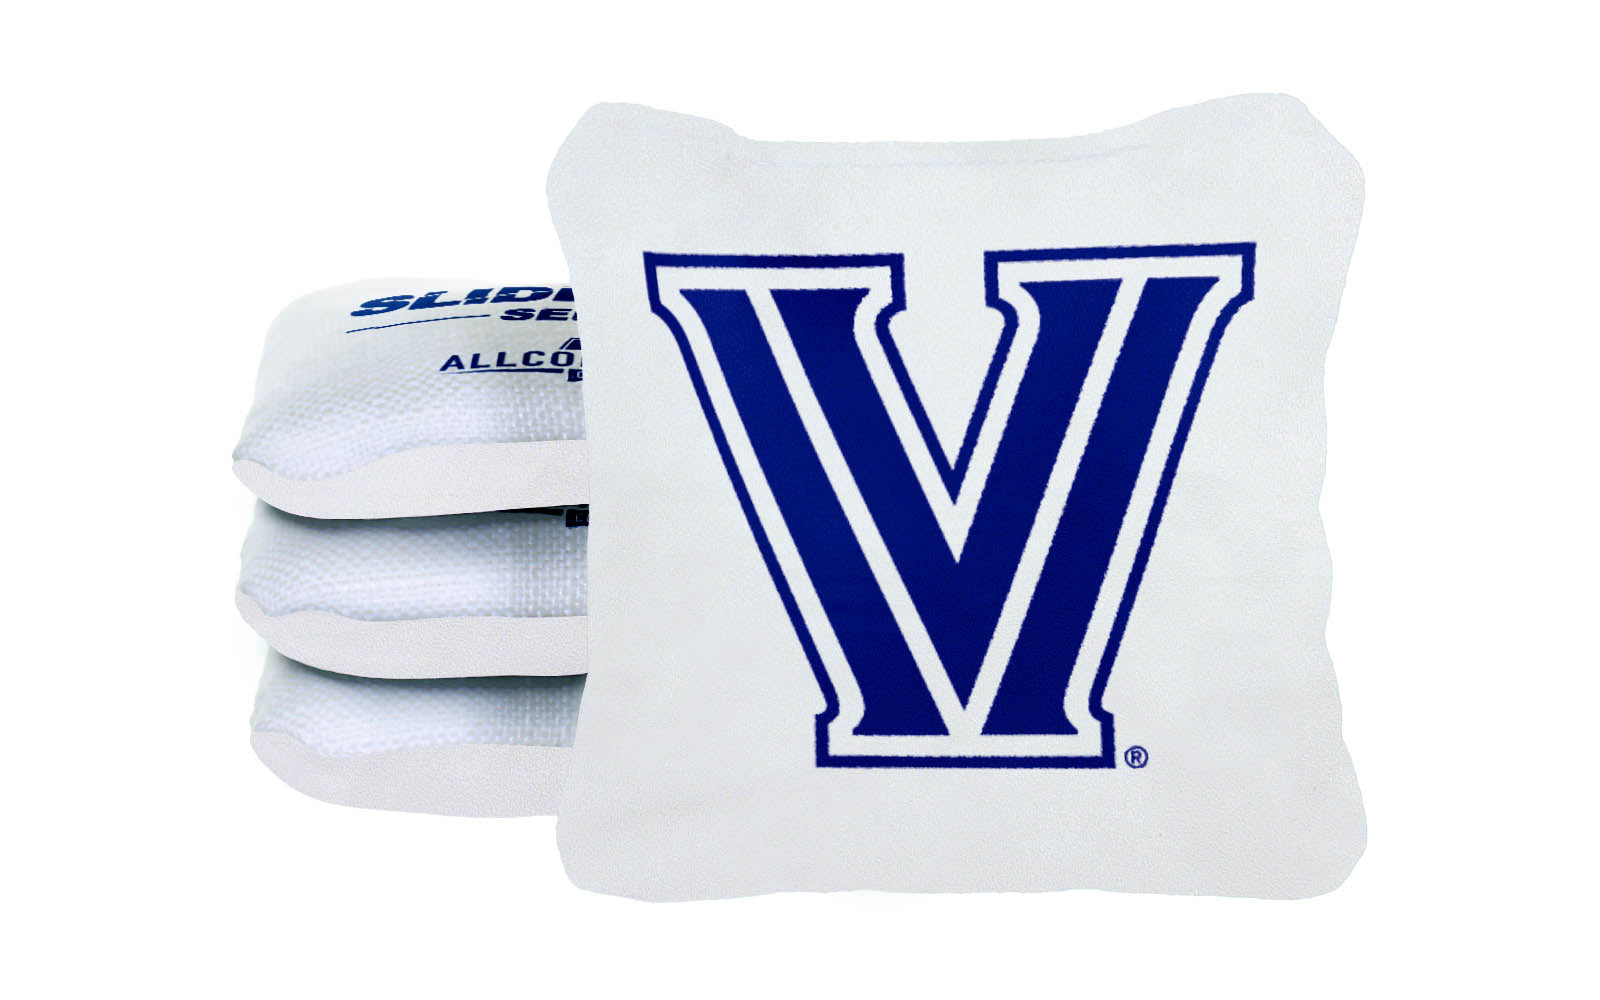 Officially Licensed Collegiate Cornhole Bags - AllCornhole Slide Rite - Set of 4 - Villanova University